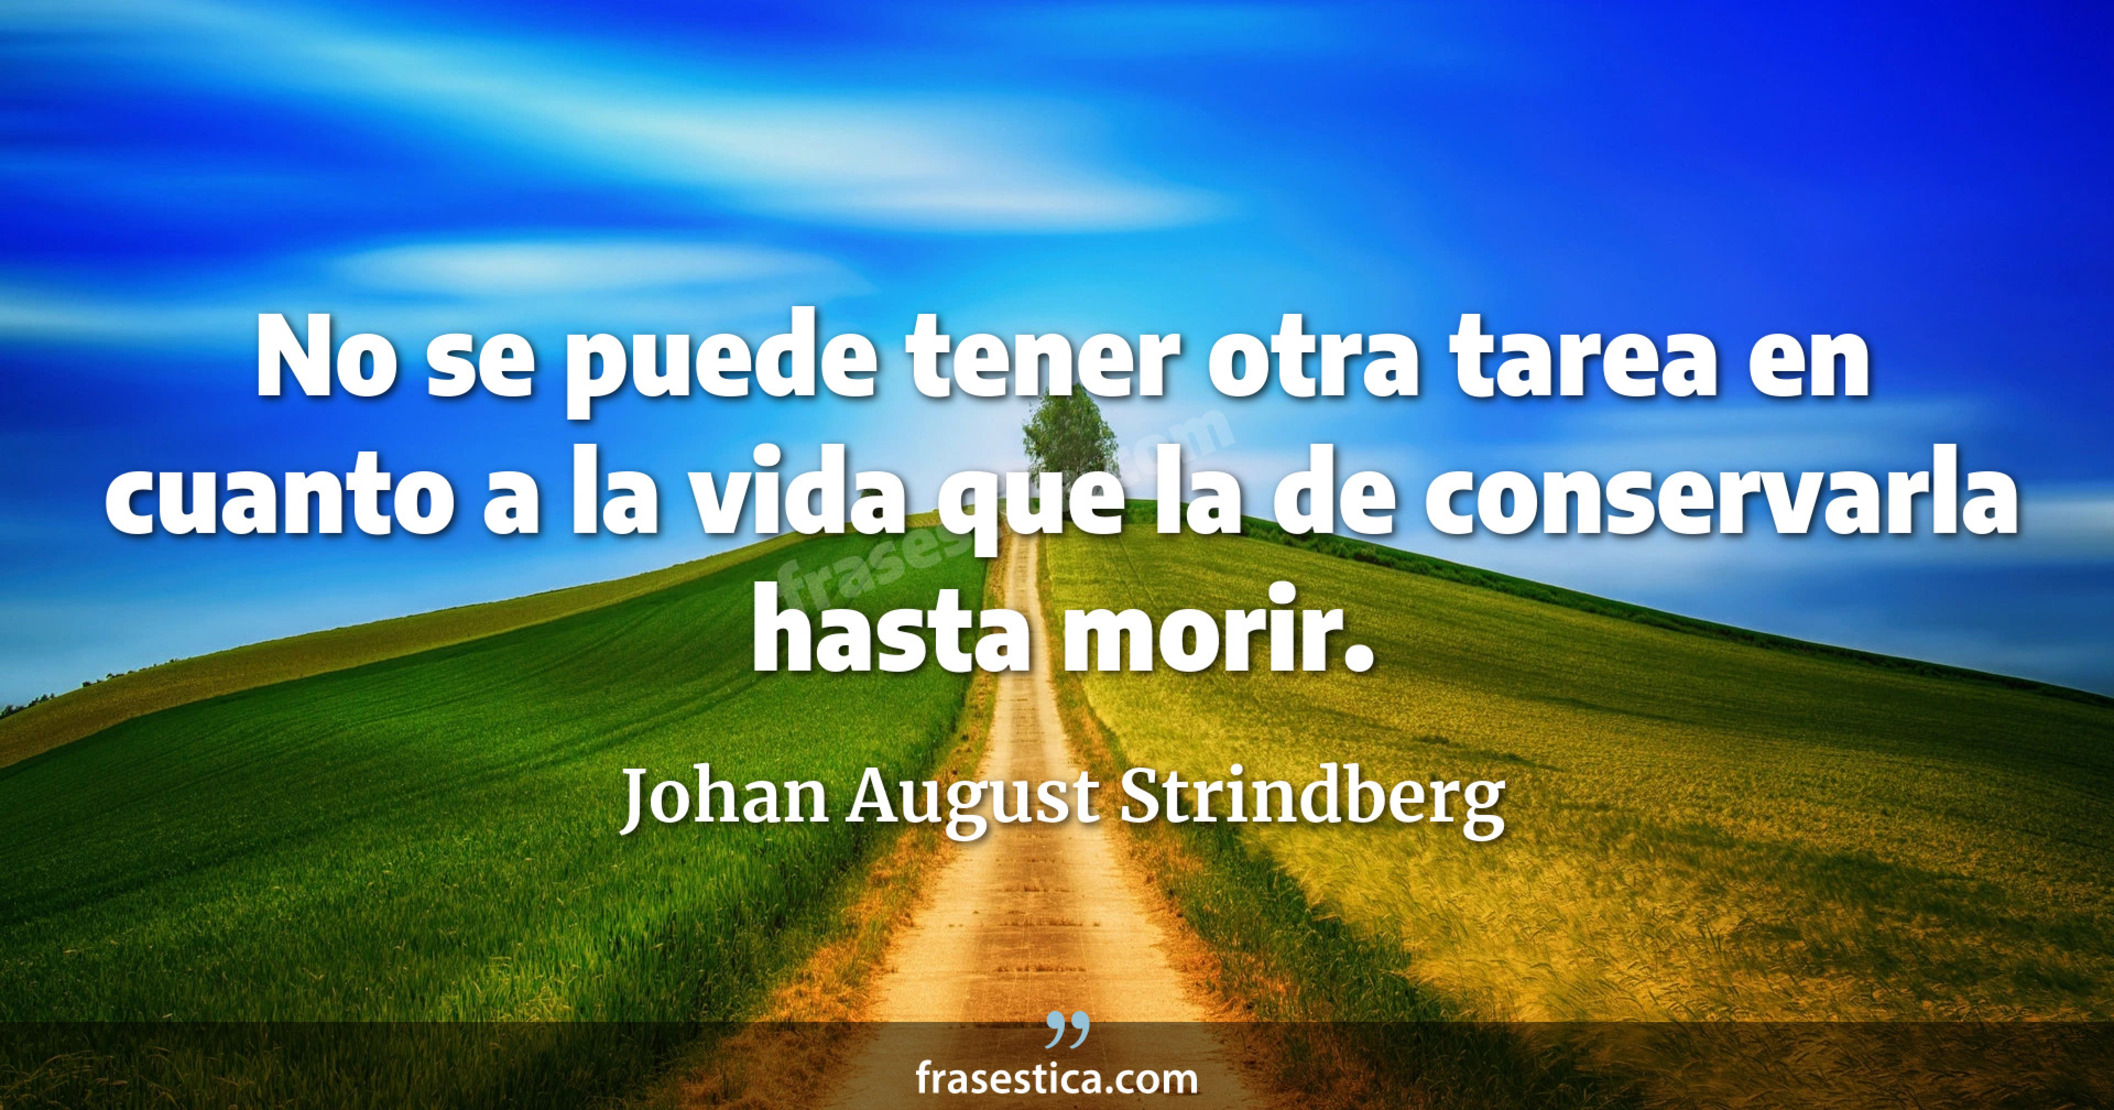 No se puede tener otra tarea en cuanto a la vida que la de conservarla hasta morir. - Johan August Strindberg